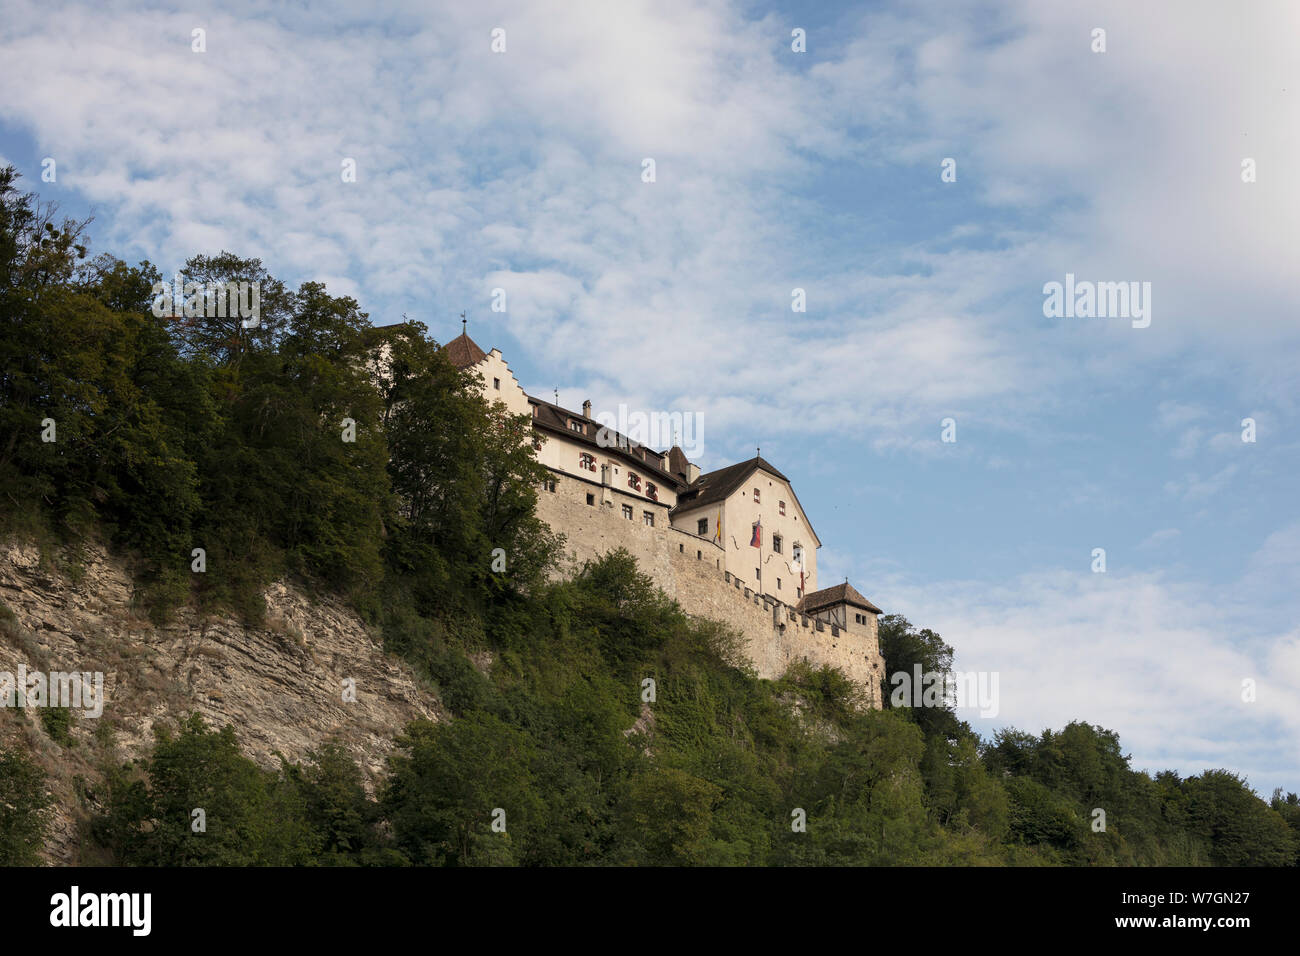 Il Castello di Vaduz, la residenza ufficiale del Principe del Liechtenstein, si affaccia sulla città di Vaduz dalla sua posizione collinare. Foto Stock